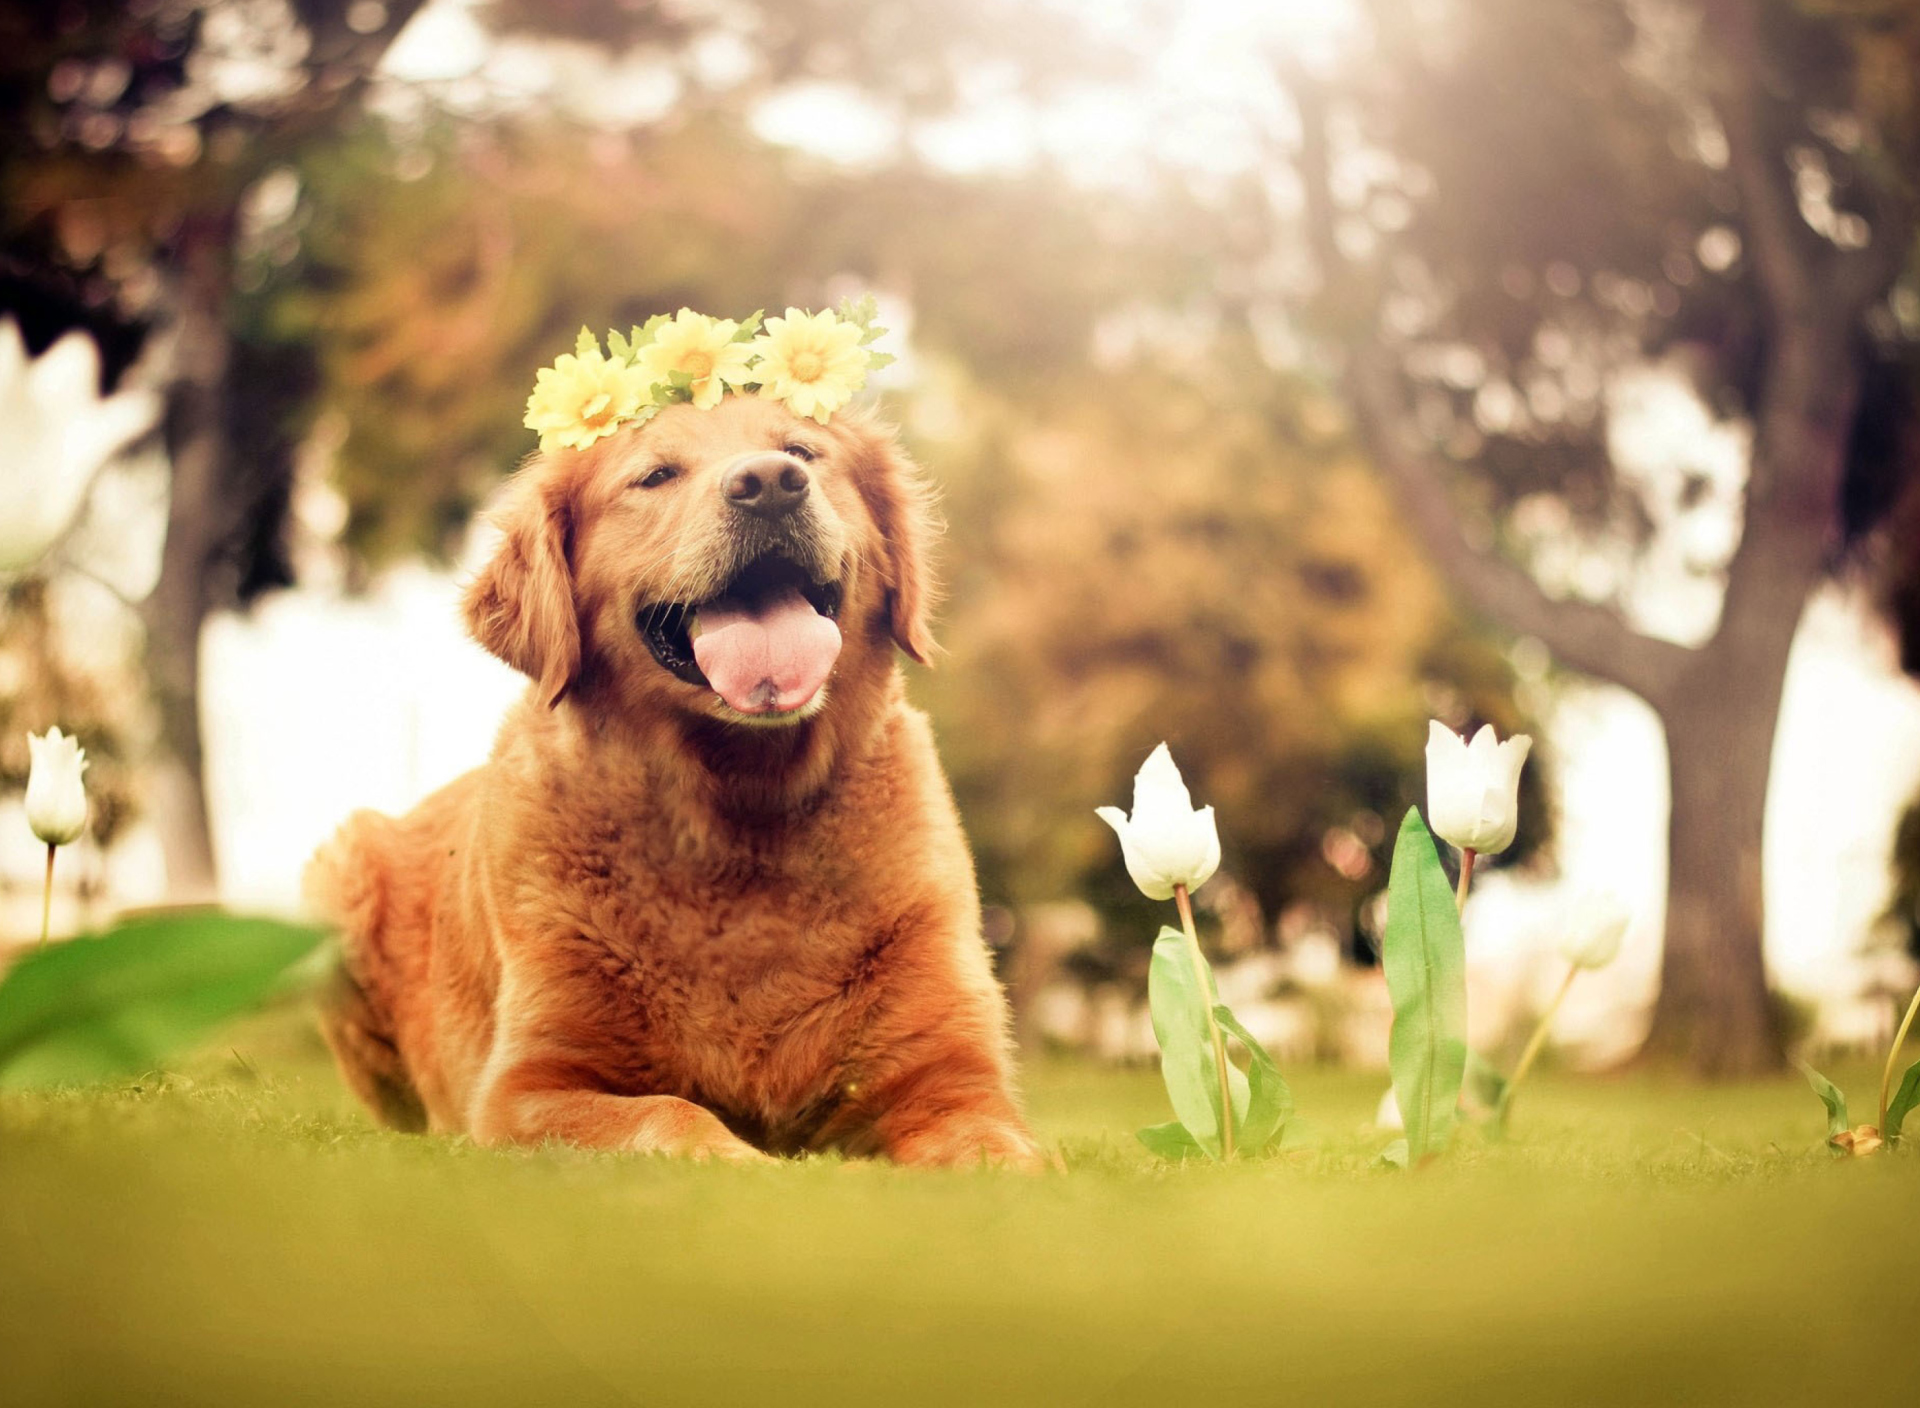 Обои Ginger Dog With Flower Wreath 1920x1408